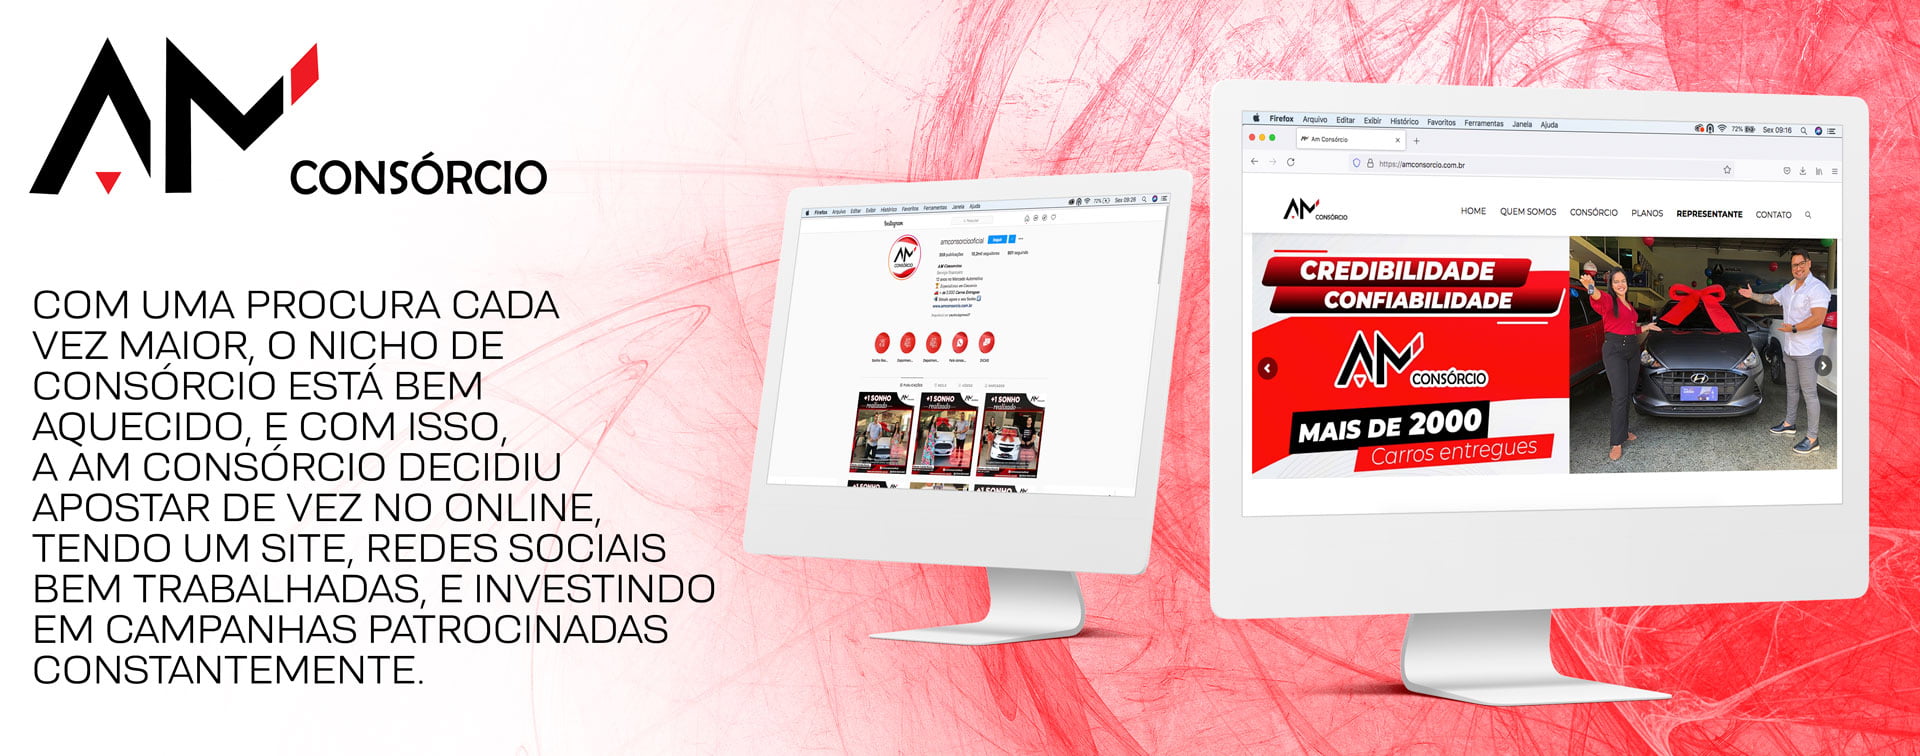 AM Consórcio - Case da Agência Davs de Marketing Digital em Fortaleza